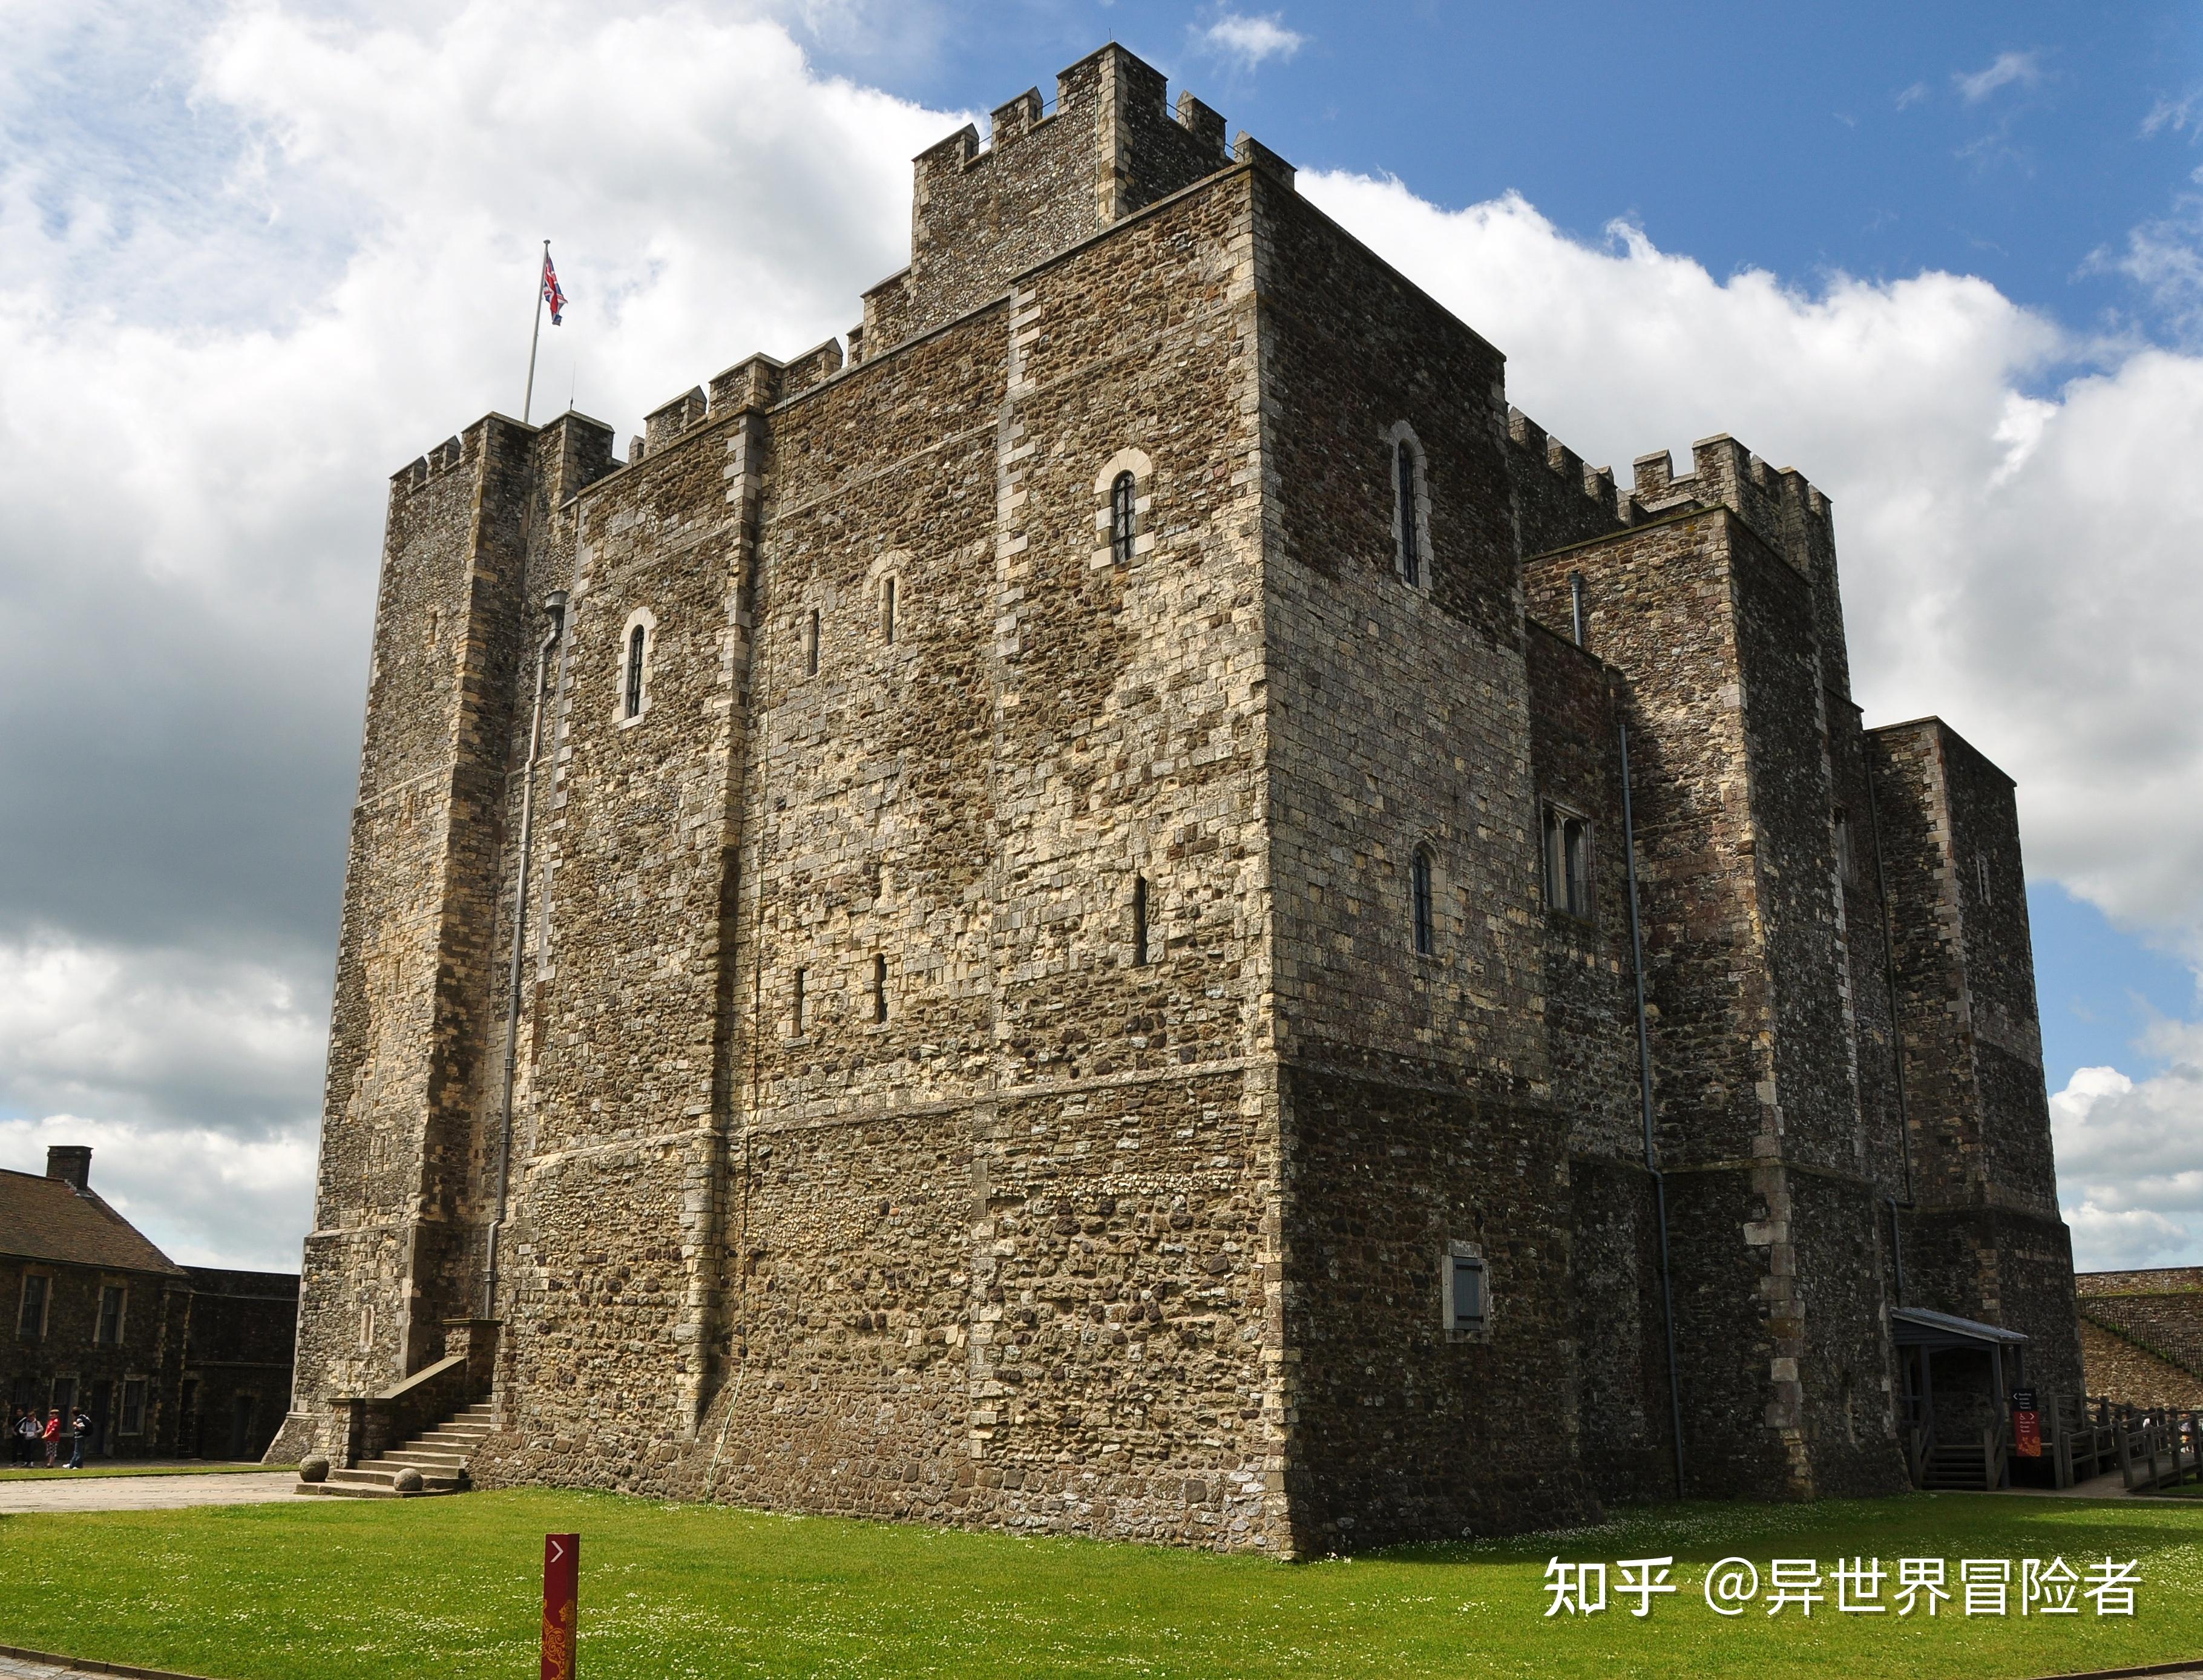 中世纪的城堡主楼:城堡的最后防守之地